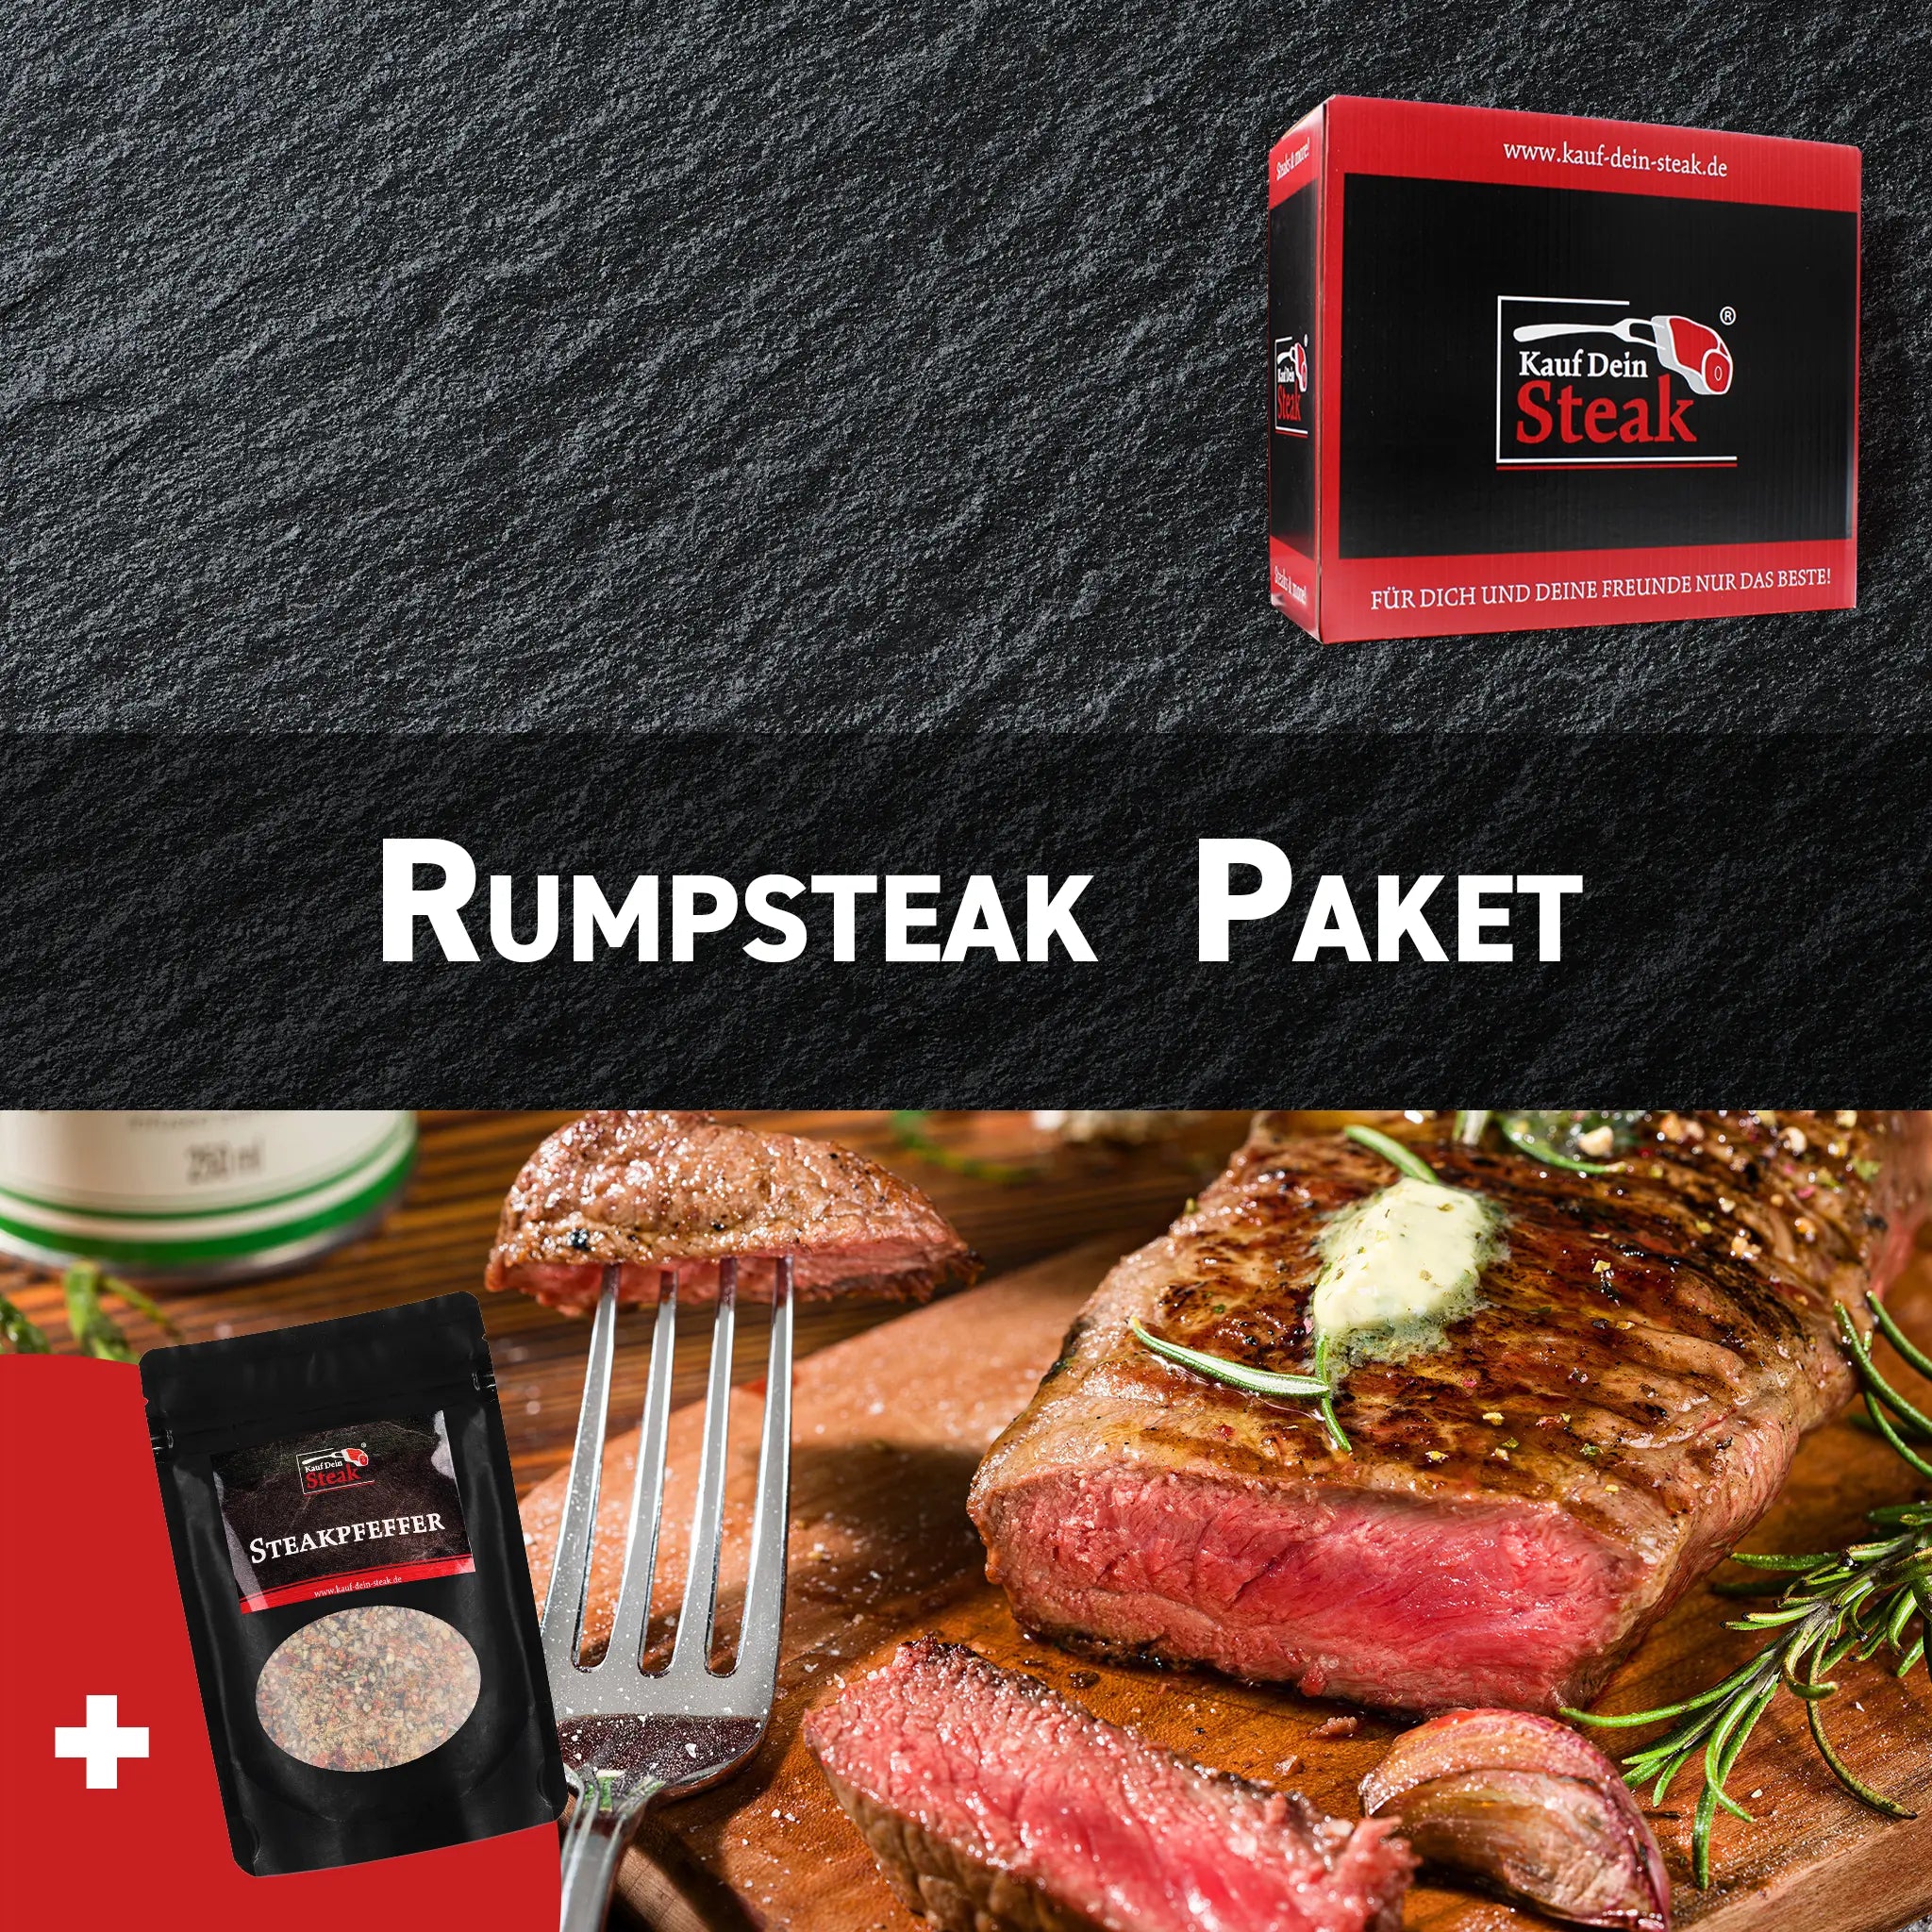 6 x Rumpsteak + Steakpfeffer